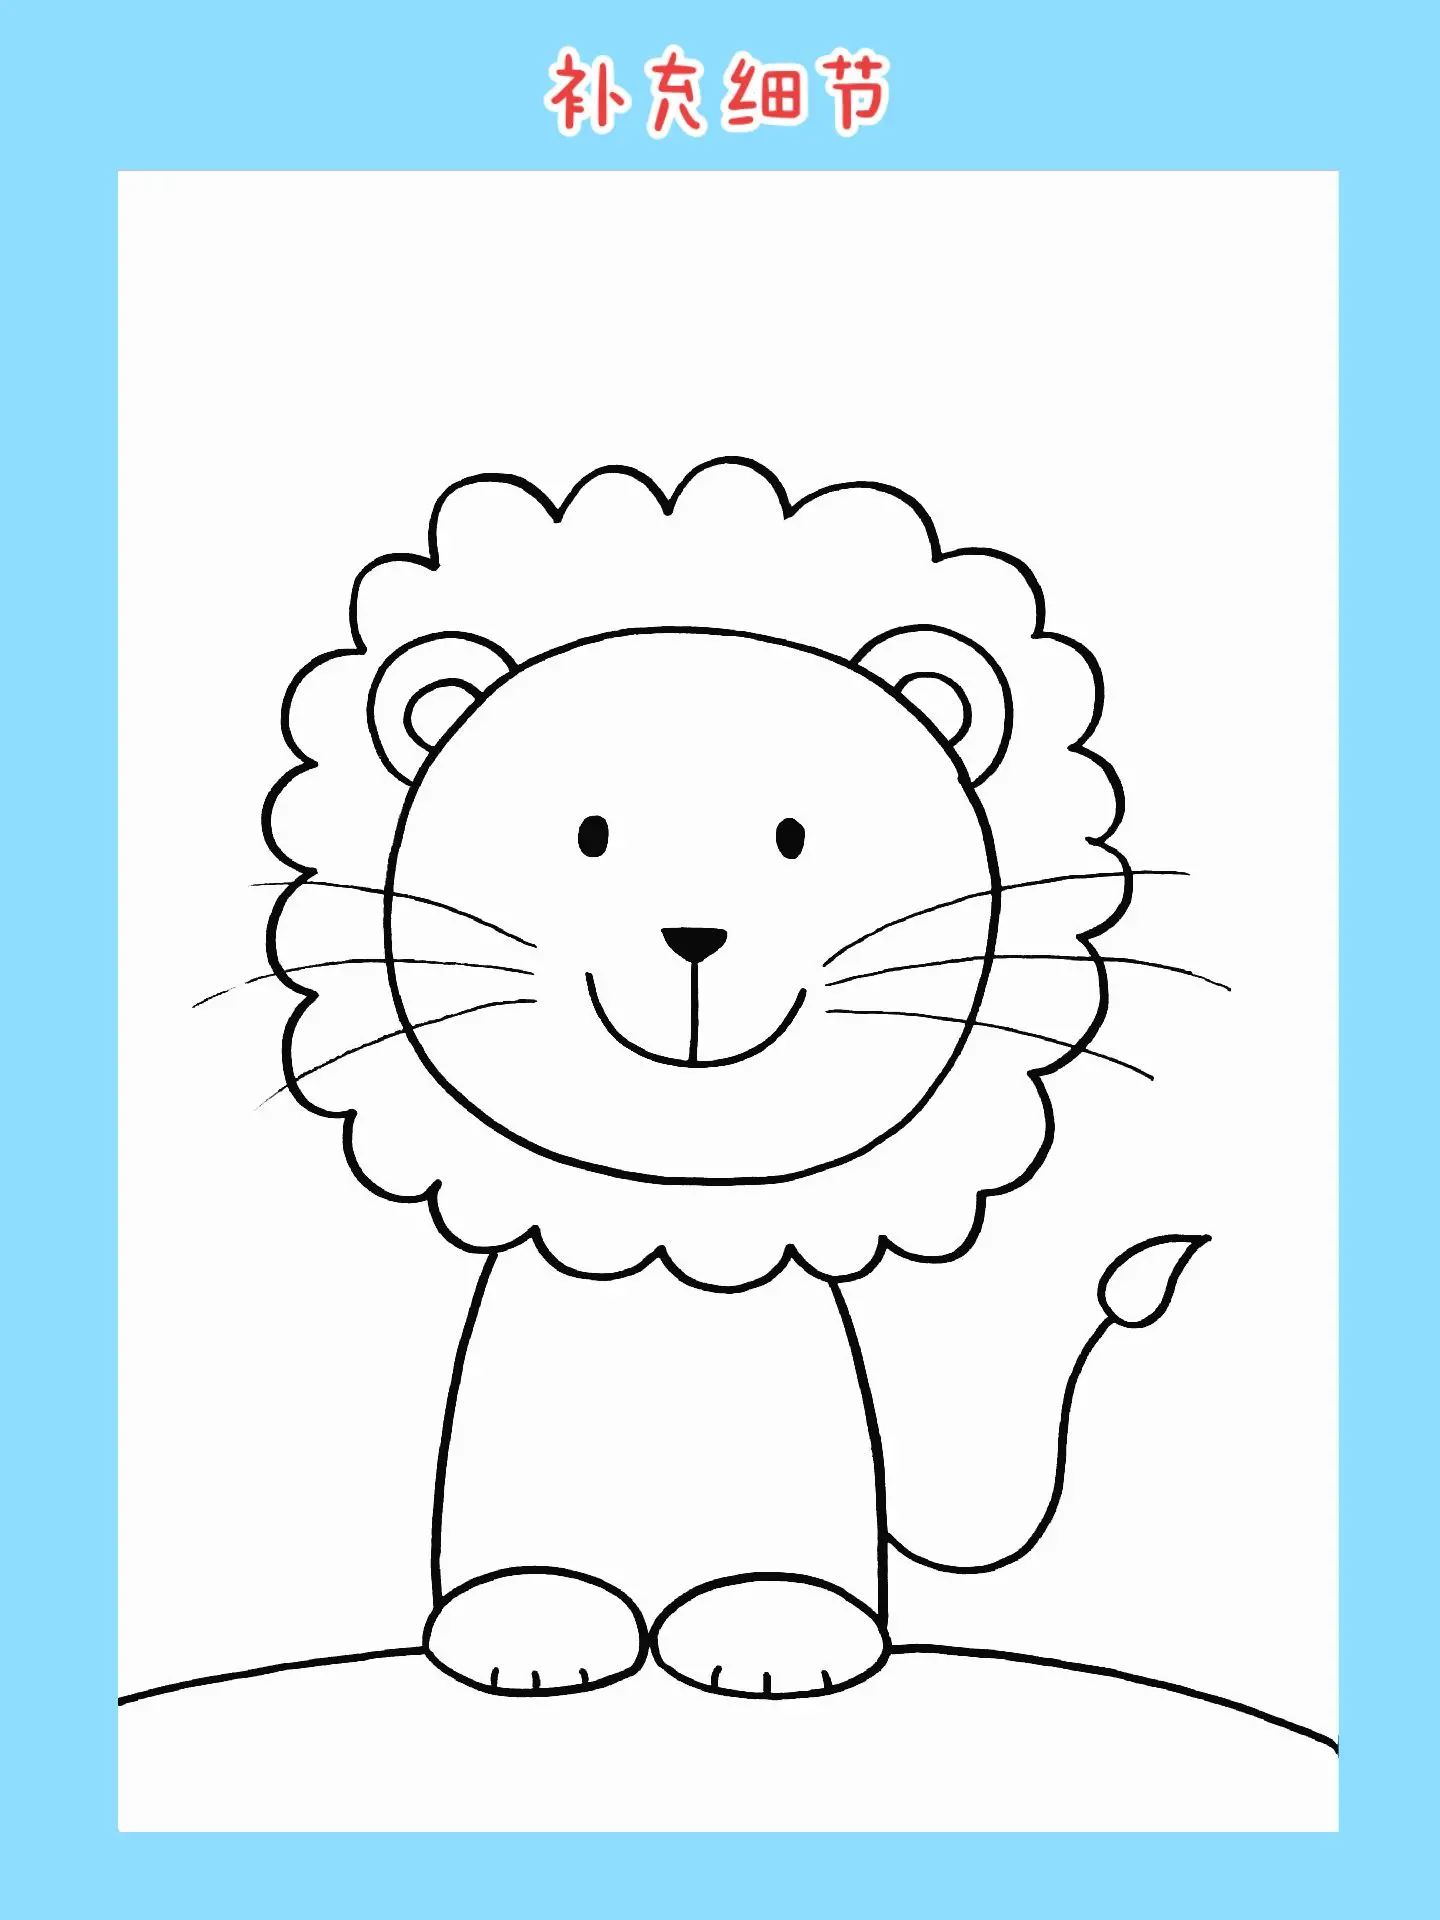 狮子简笔画步骤图 肉丁儿童网